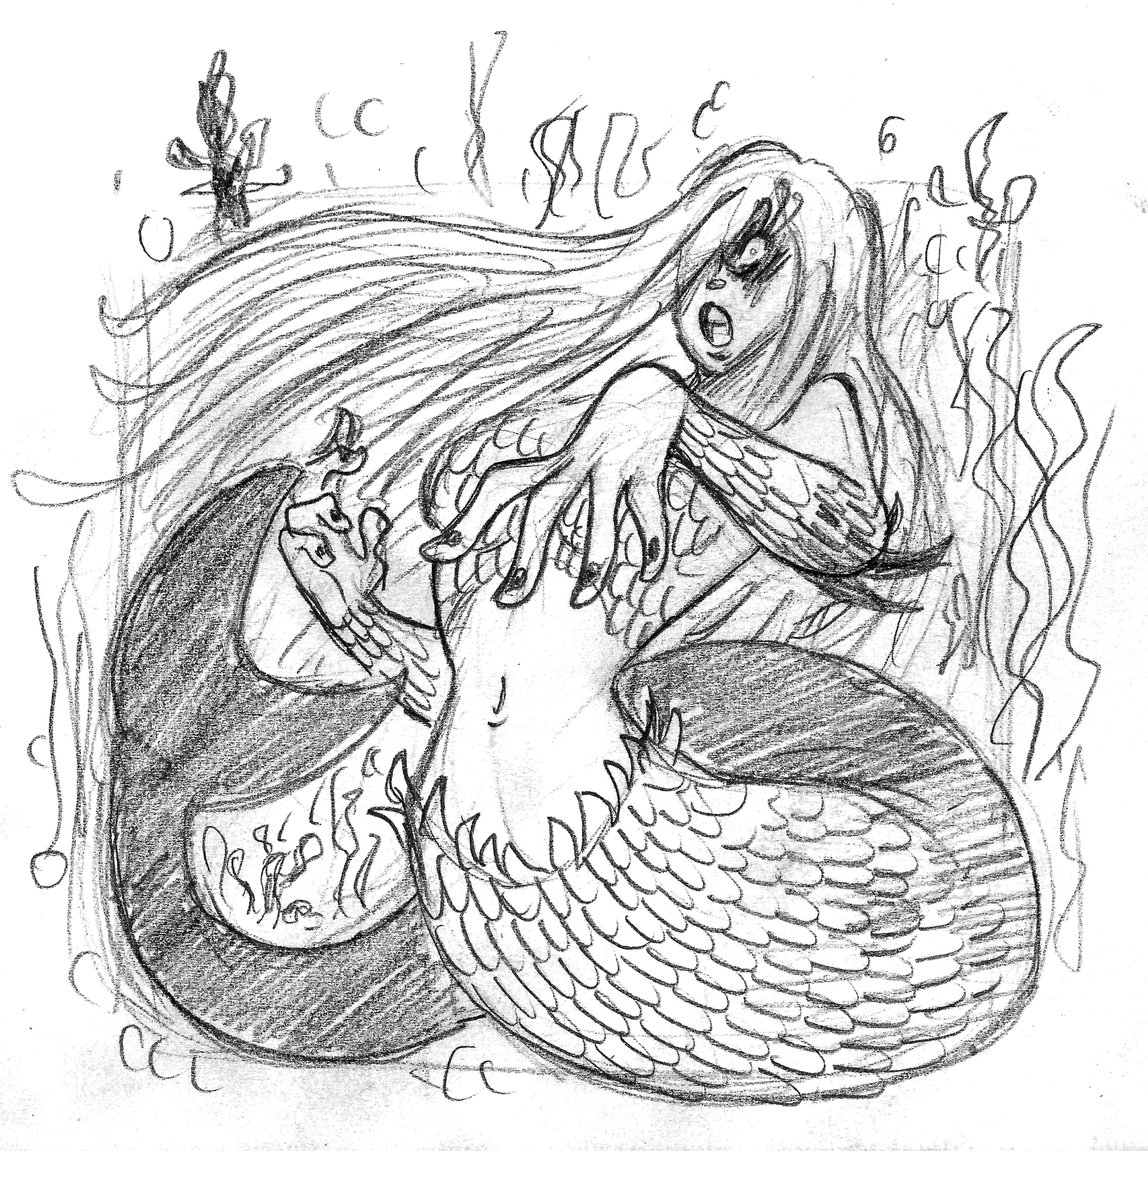 Trish evil mermaid

#characterdesign  #character #Chara #pencil #pencilart #fumetto #comics #mermaid #manga #Everyday #evilgirl